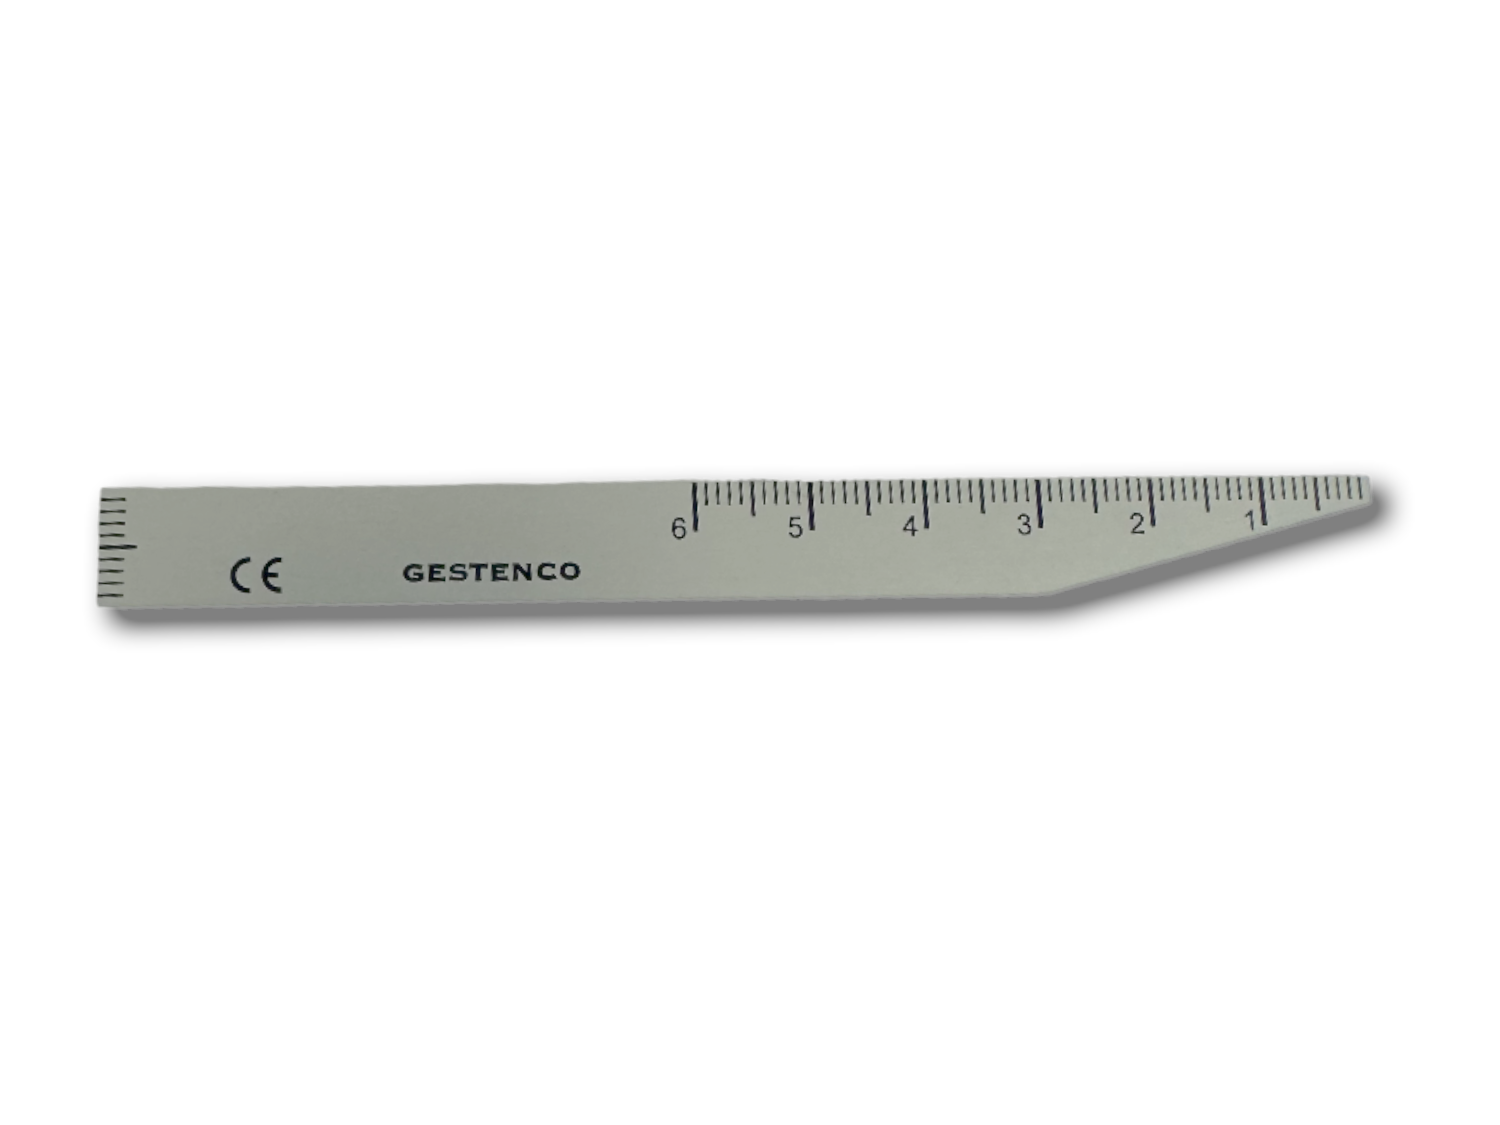 Overbite Ruler Aluminium 6 cm